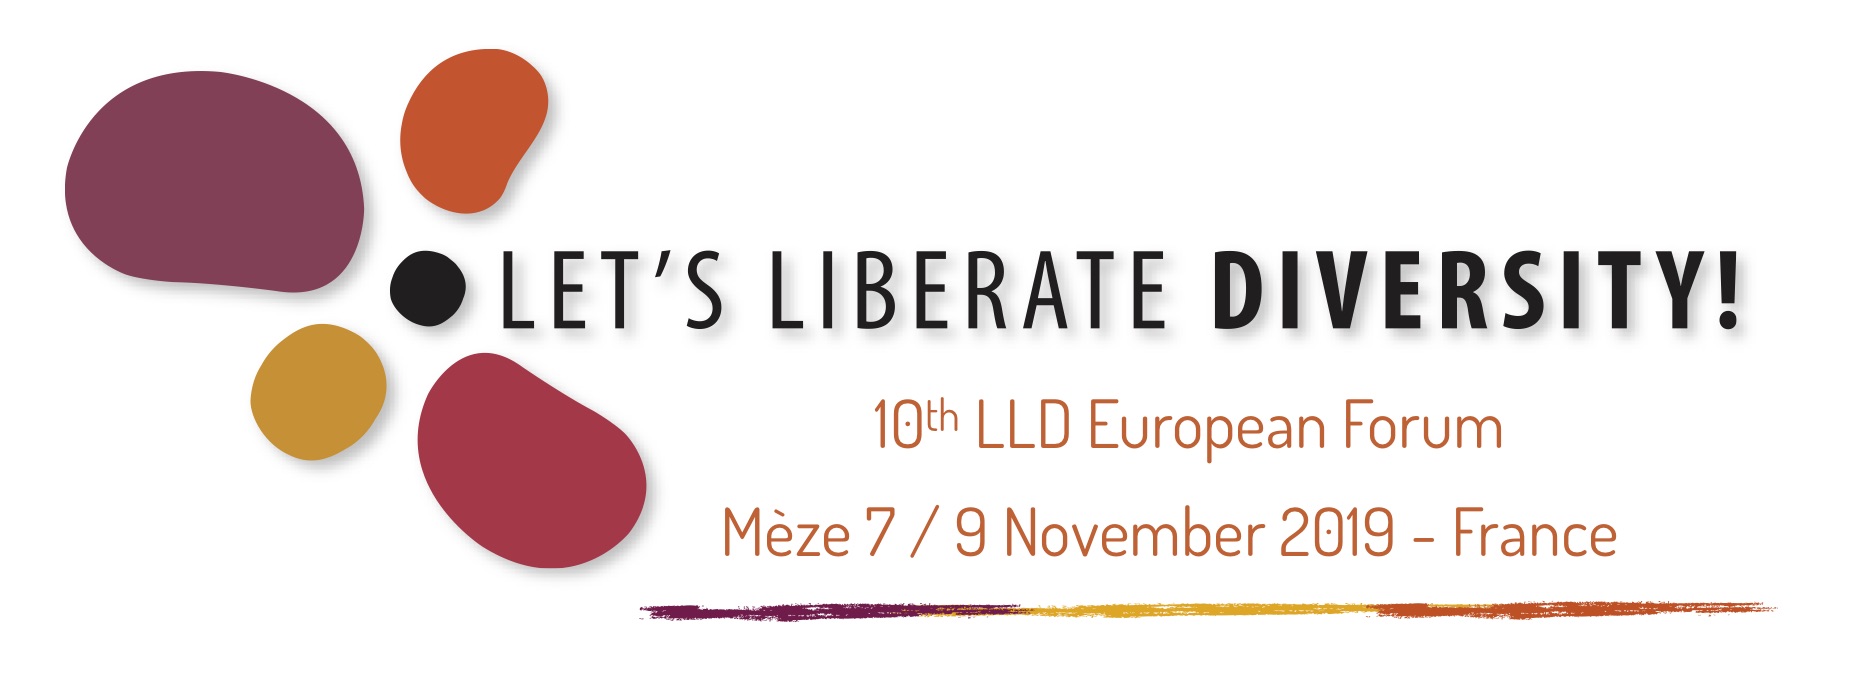 Let's Liberate Diversity - et fælles europæisk netværksmøde